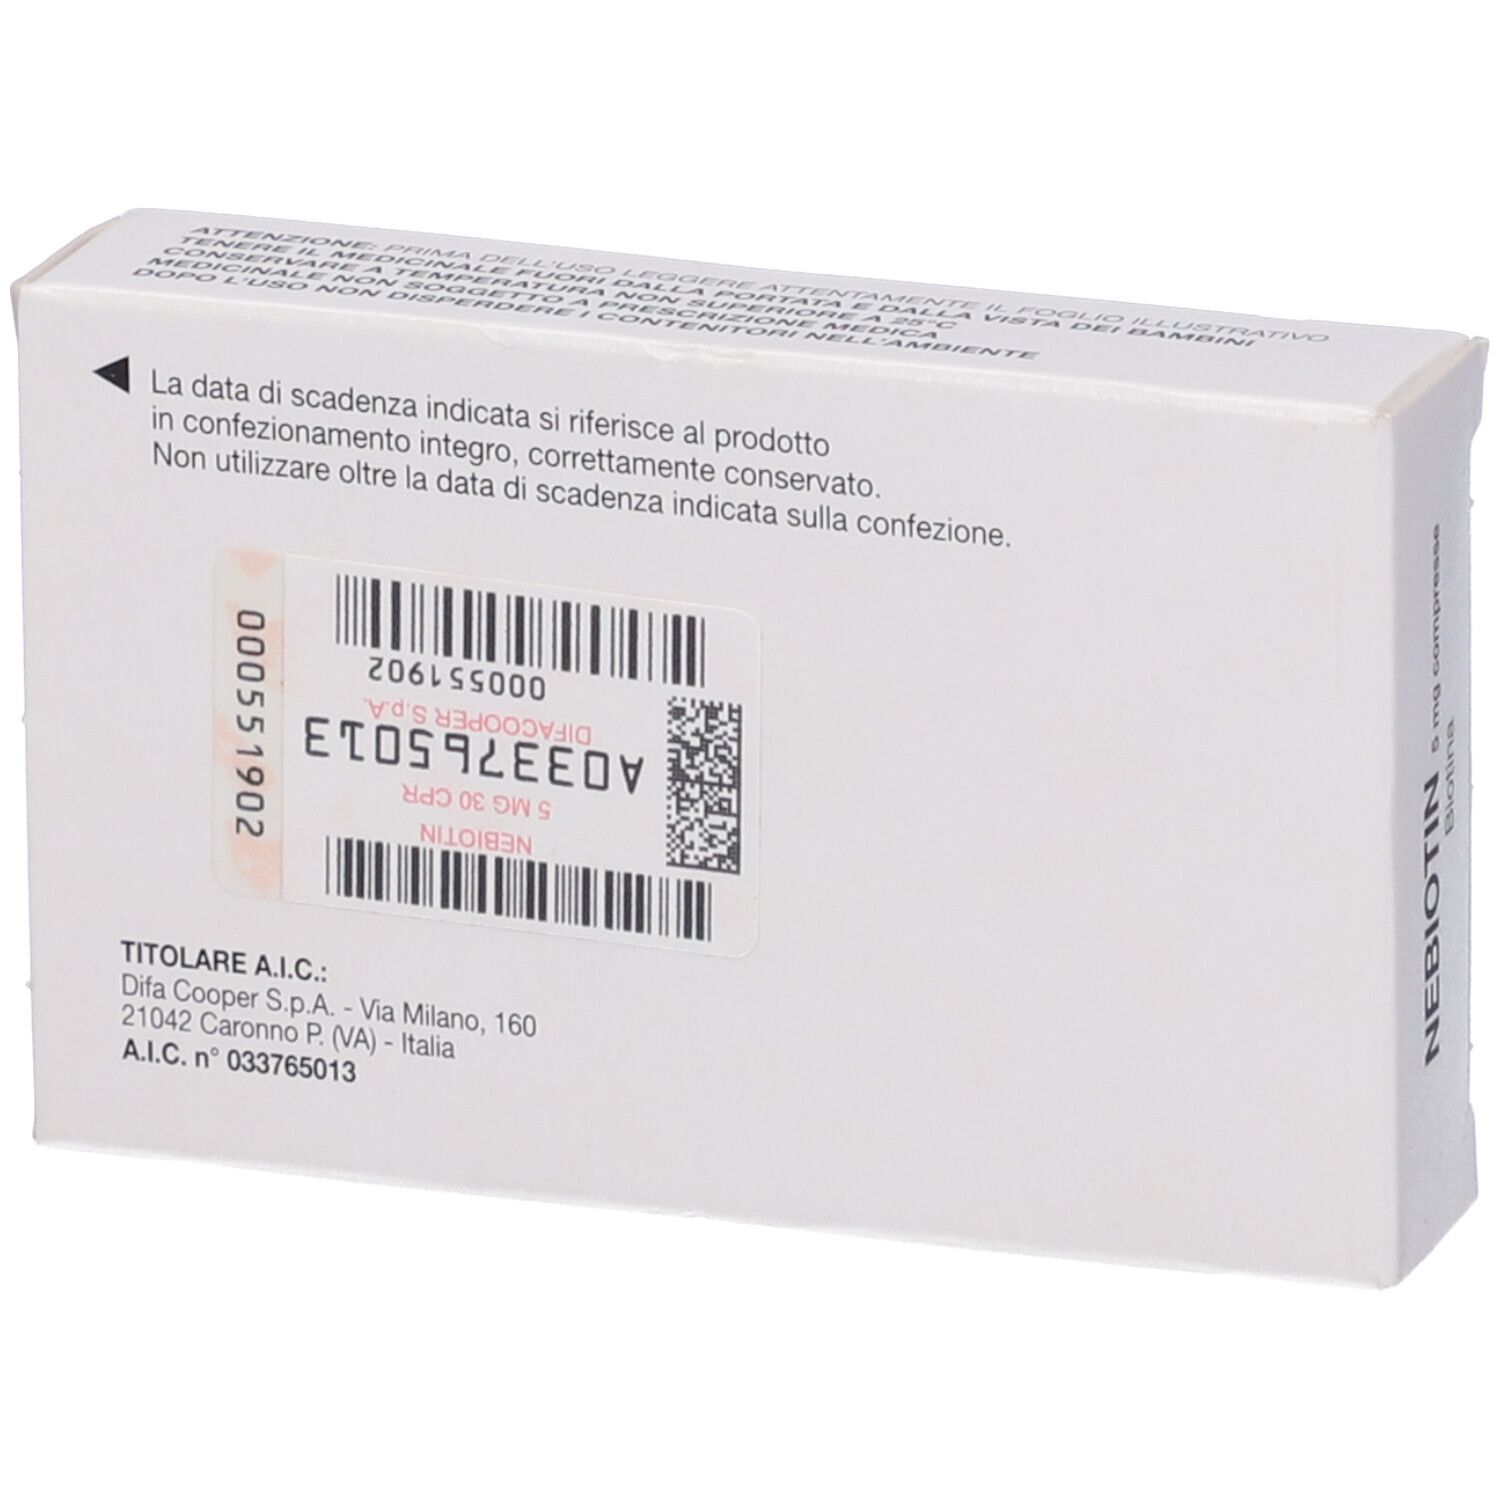 NEBIOTIN 5 mg compresse